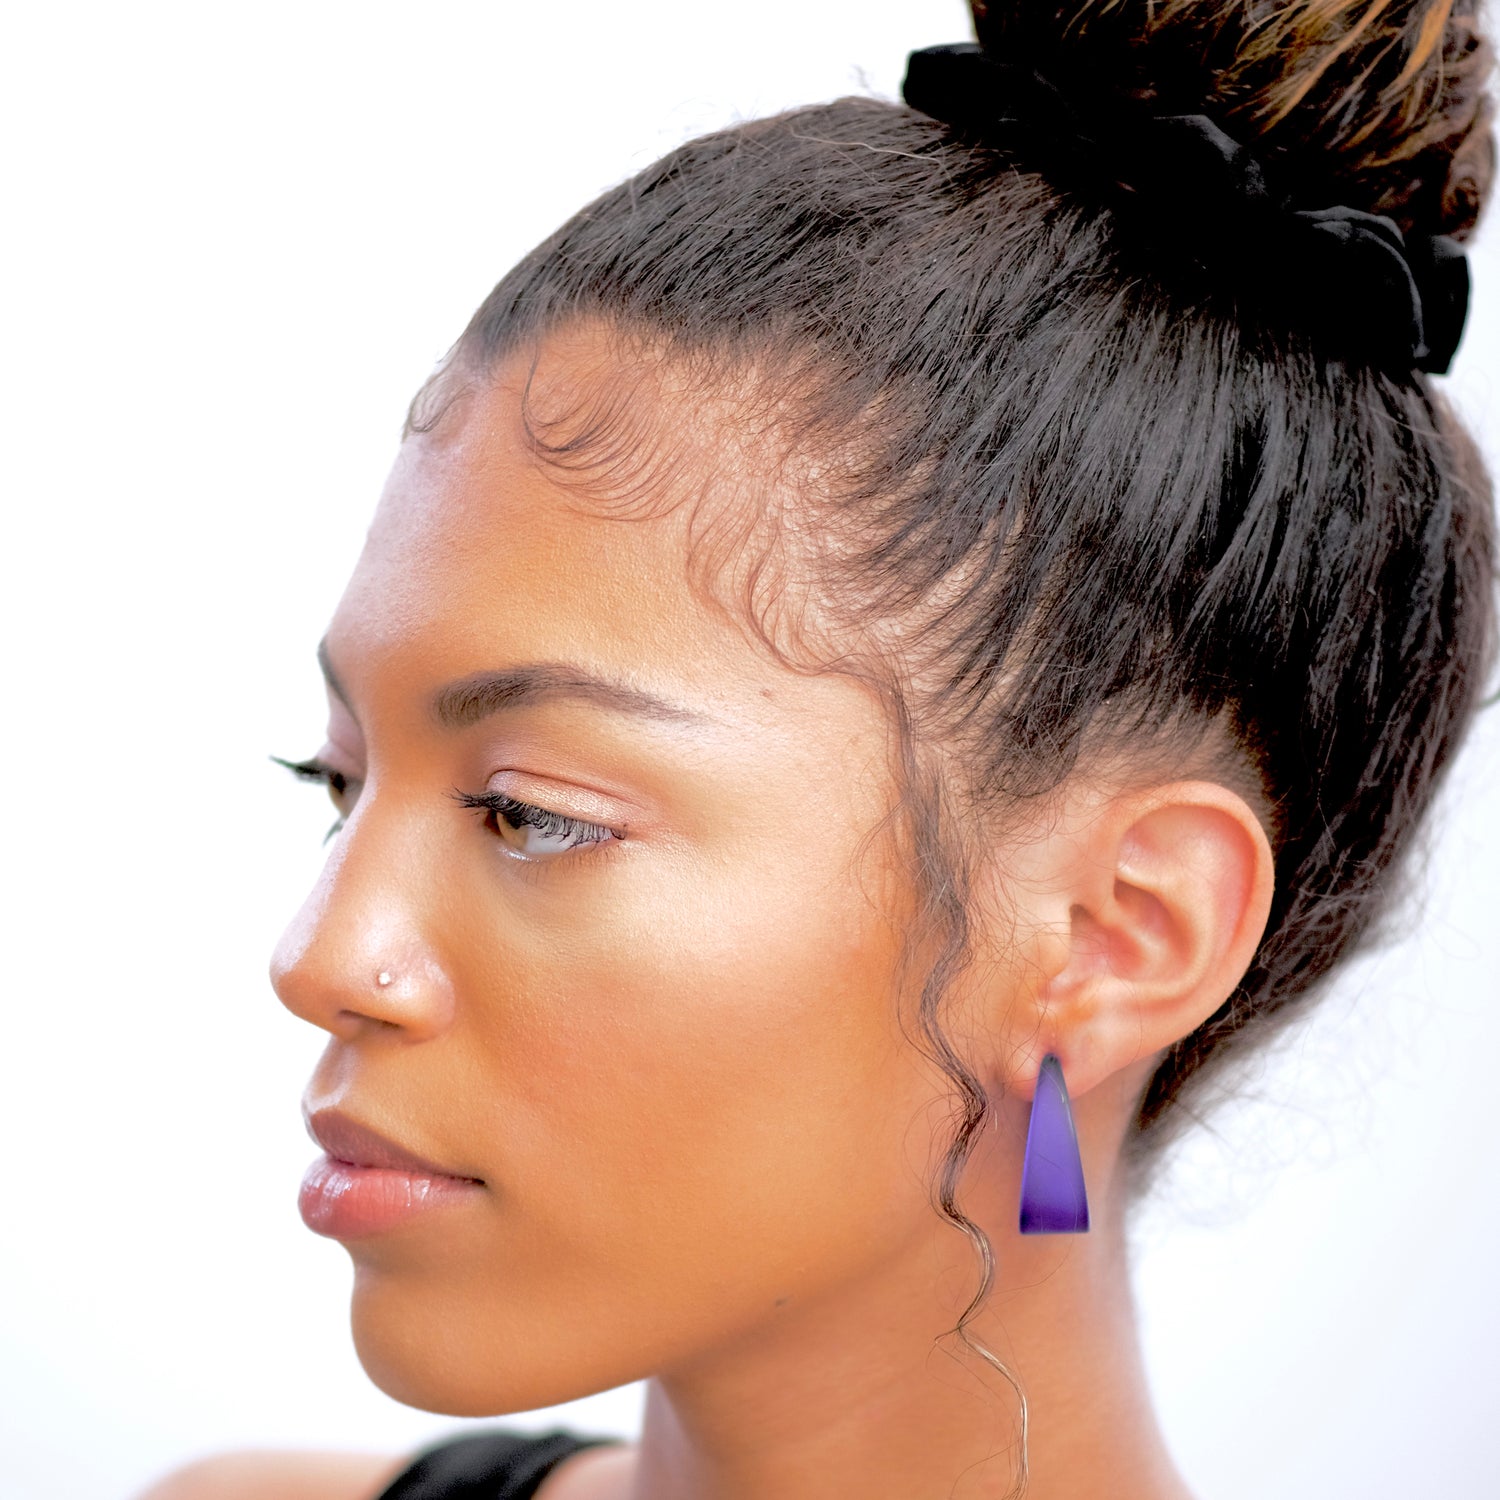 leetie earrings